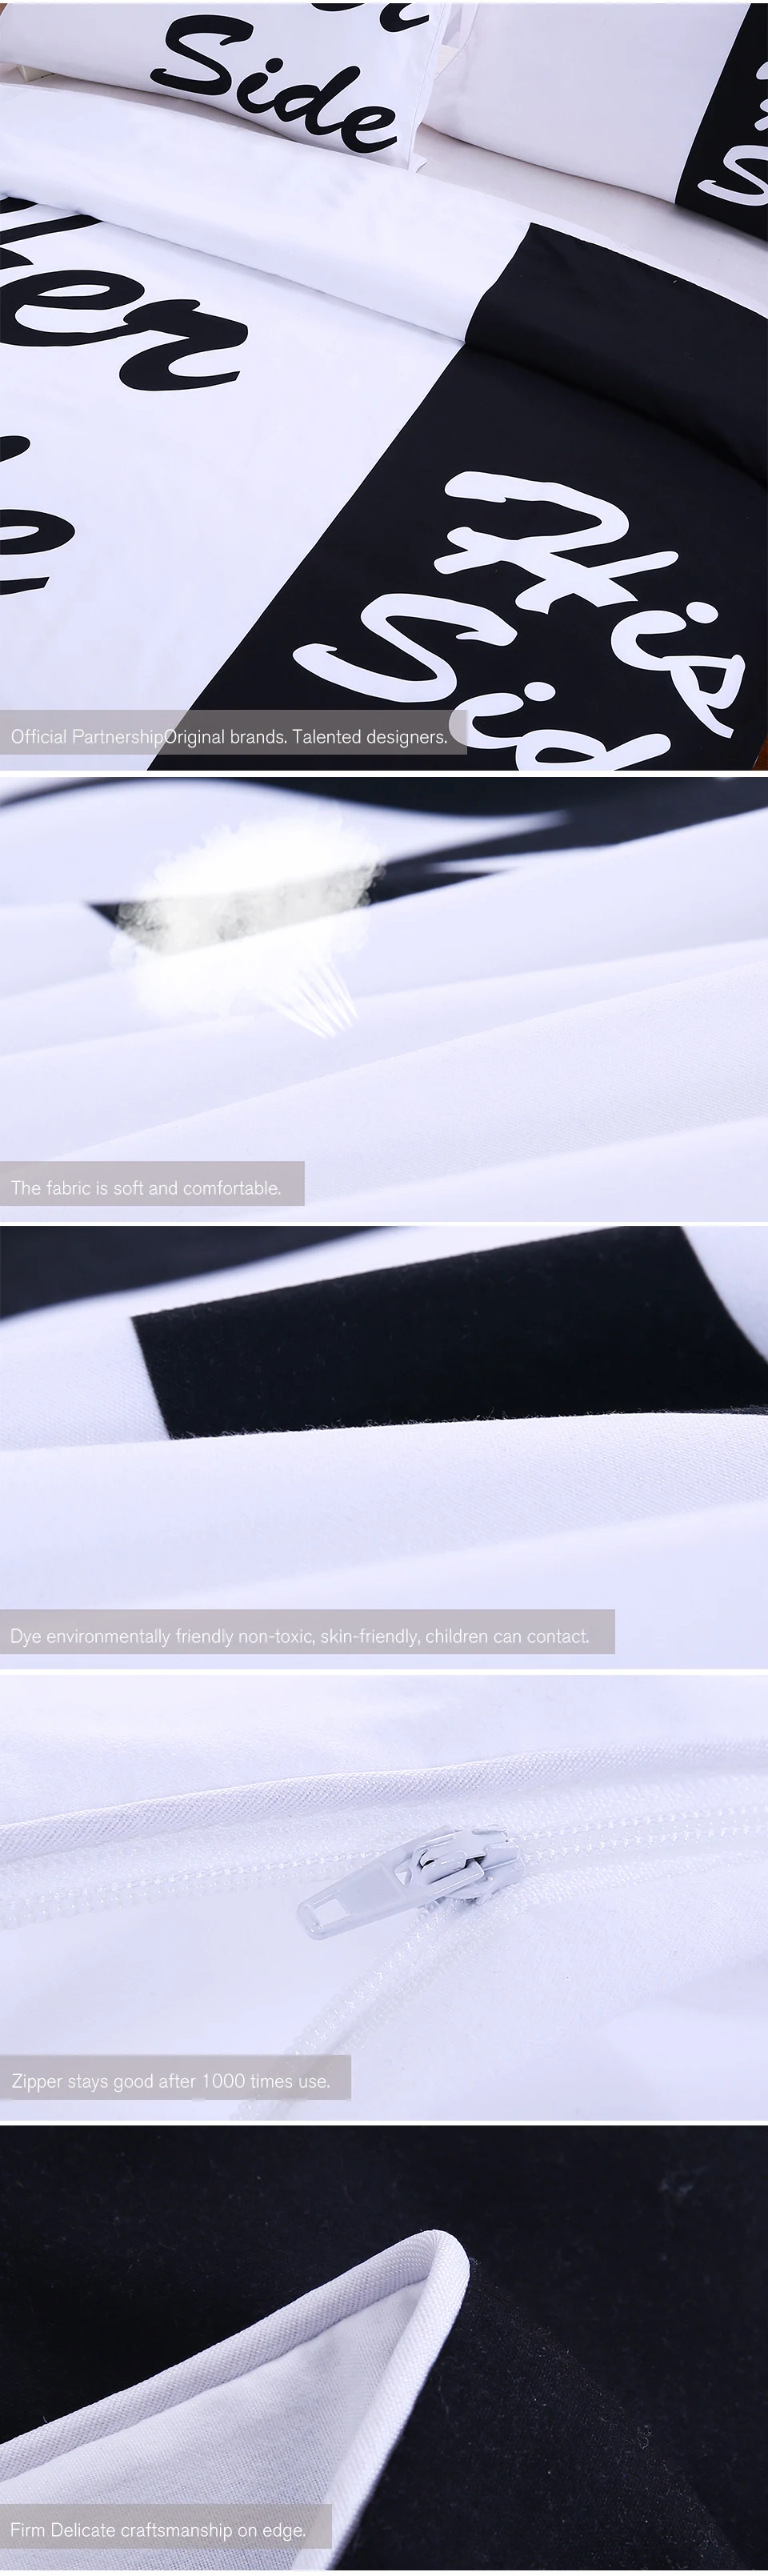 Постельные принадлежности Outlet черный и белый комплект постельного белья его сторона и ее сторона пара домашний текстиль мягкий пододеяльник с наволочками 3 шт. Лидер продаж